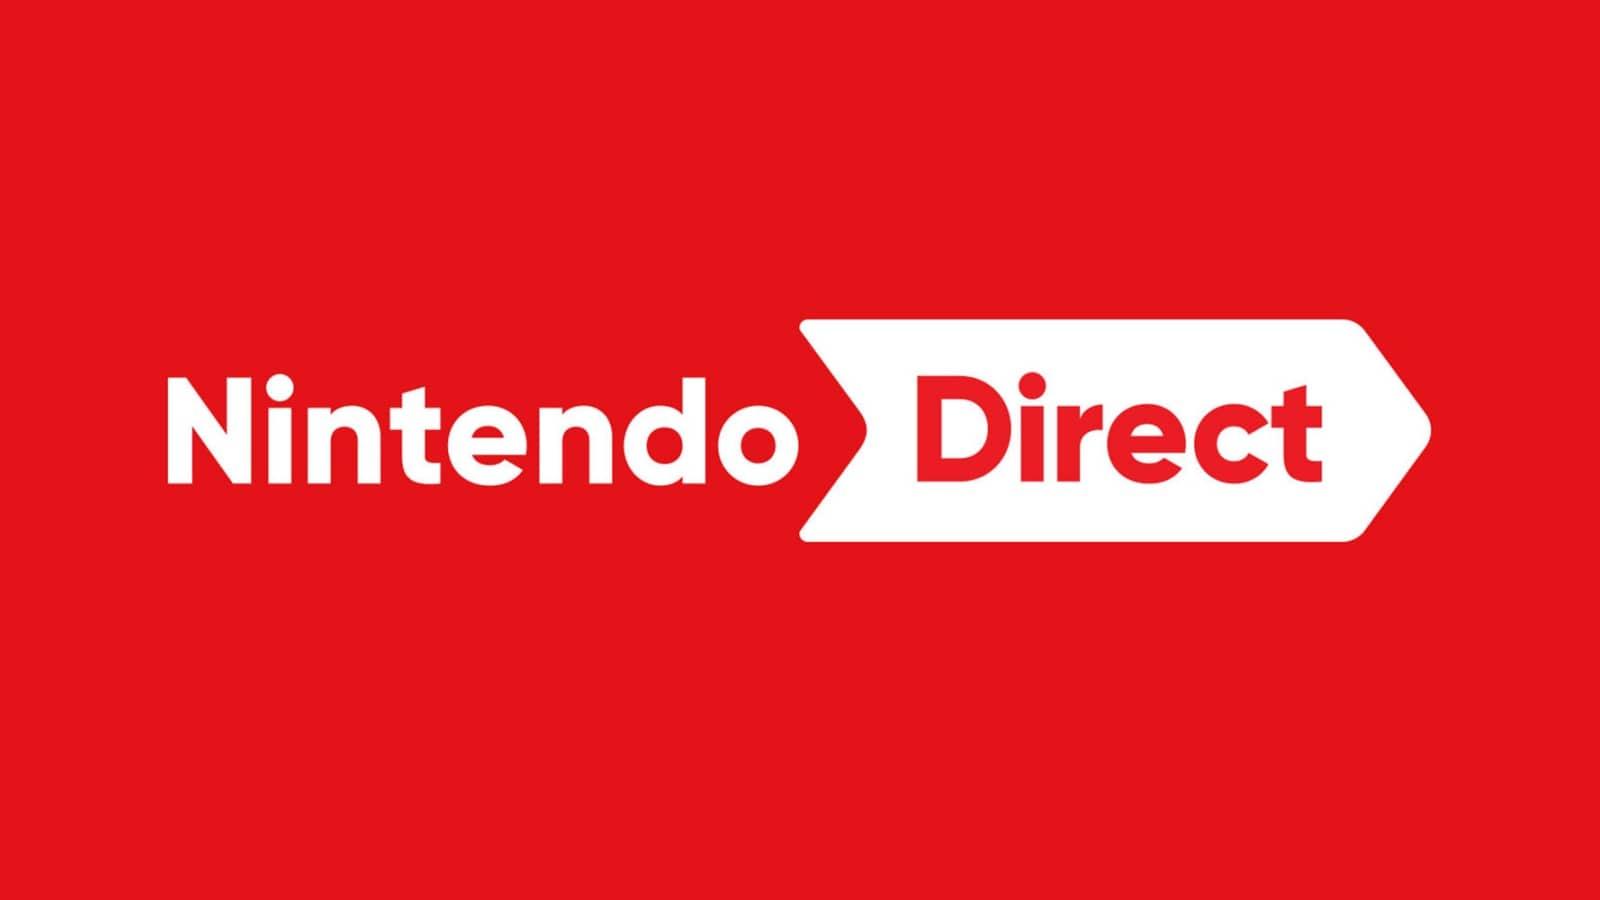 Nintendo direct September 2022 leak details